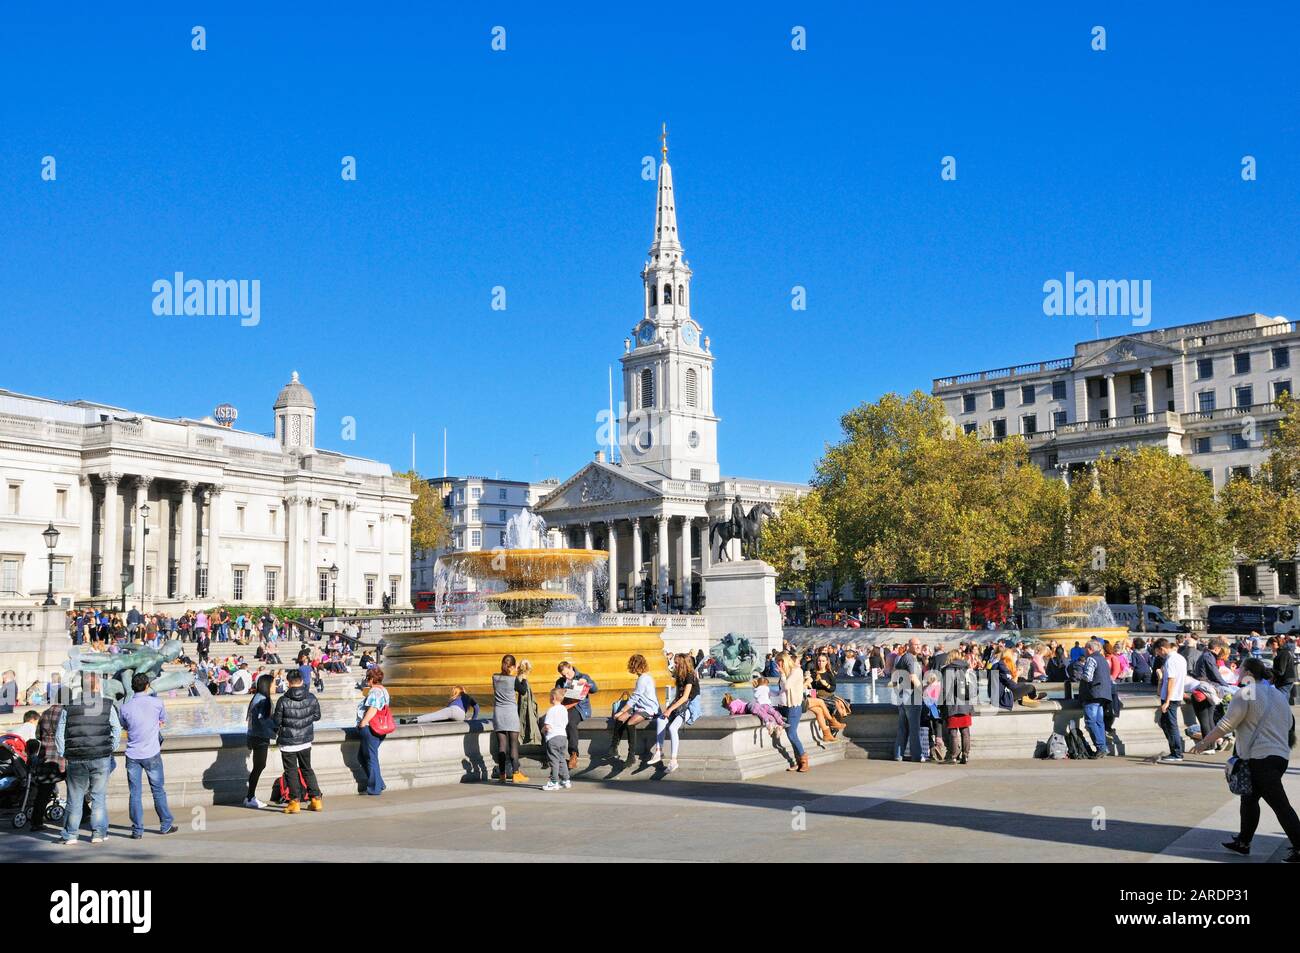 Touristen, die auf einem sonnigen Trafalgar Square mit der St. Martin-in-the-Fields-Kirche im Hintergrund sitzen, London, England, Großbritannien Stockfoto